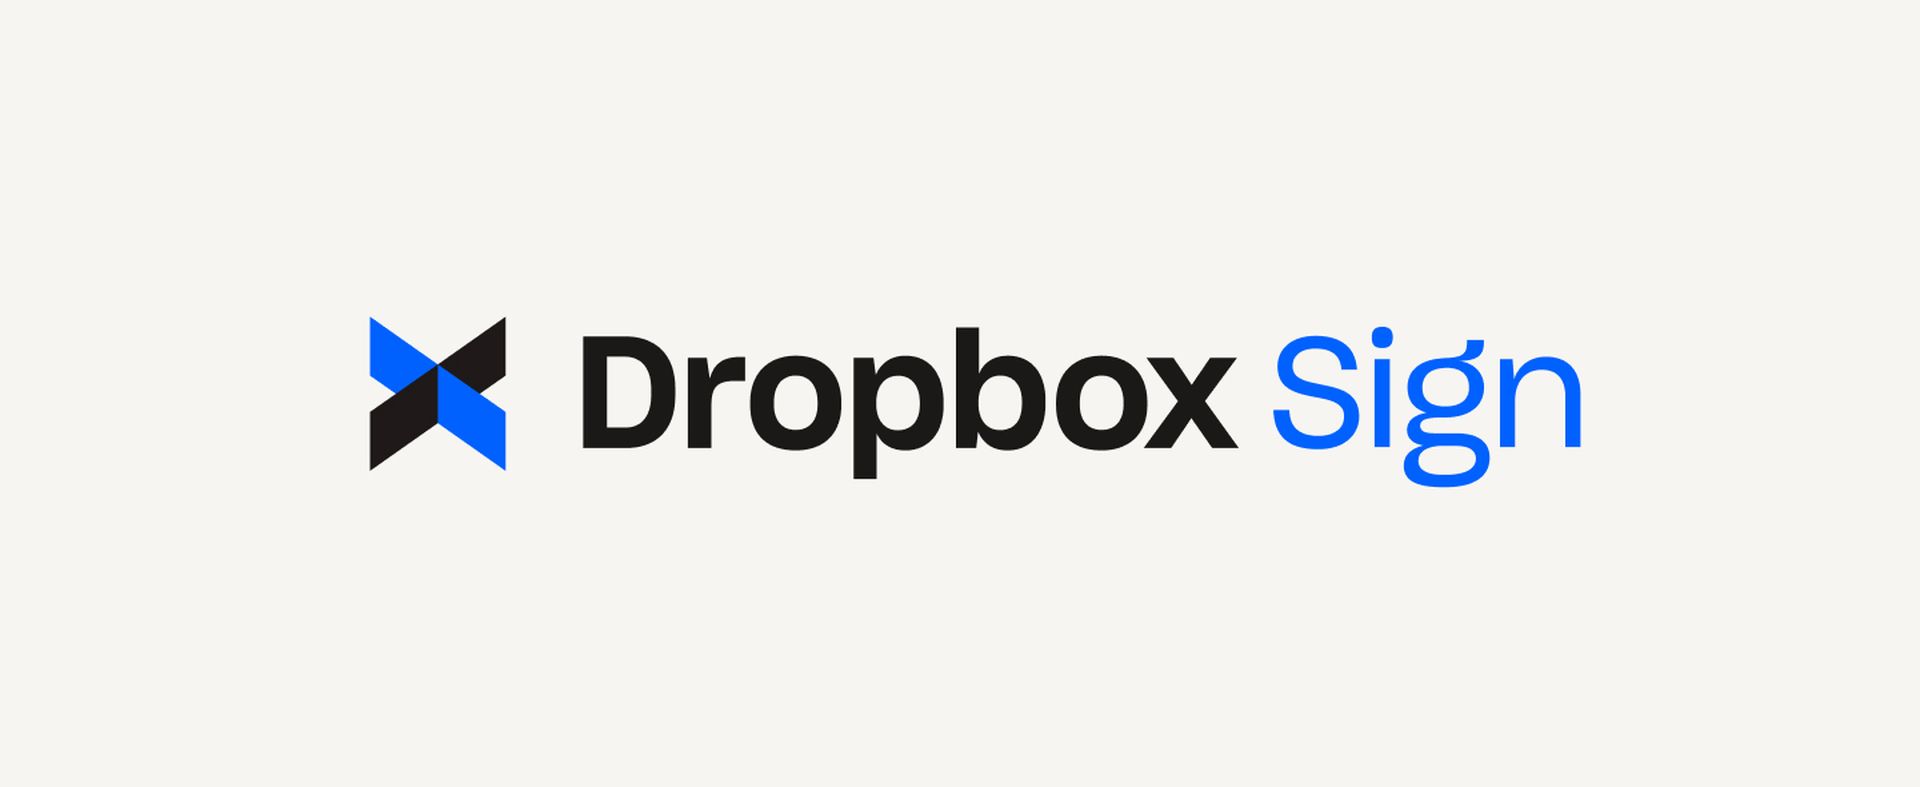 L'attaque Dropbox Sign : une analyse approfondie de la sécurité des données et de ses implications